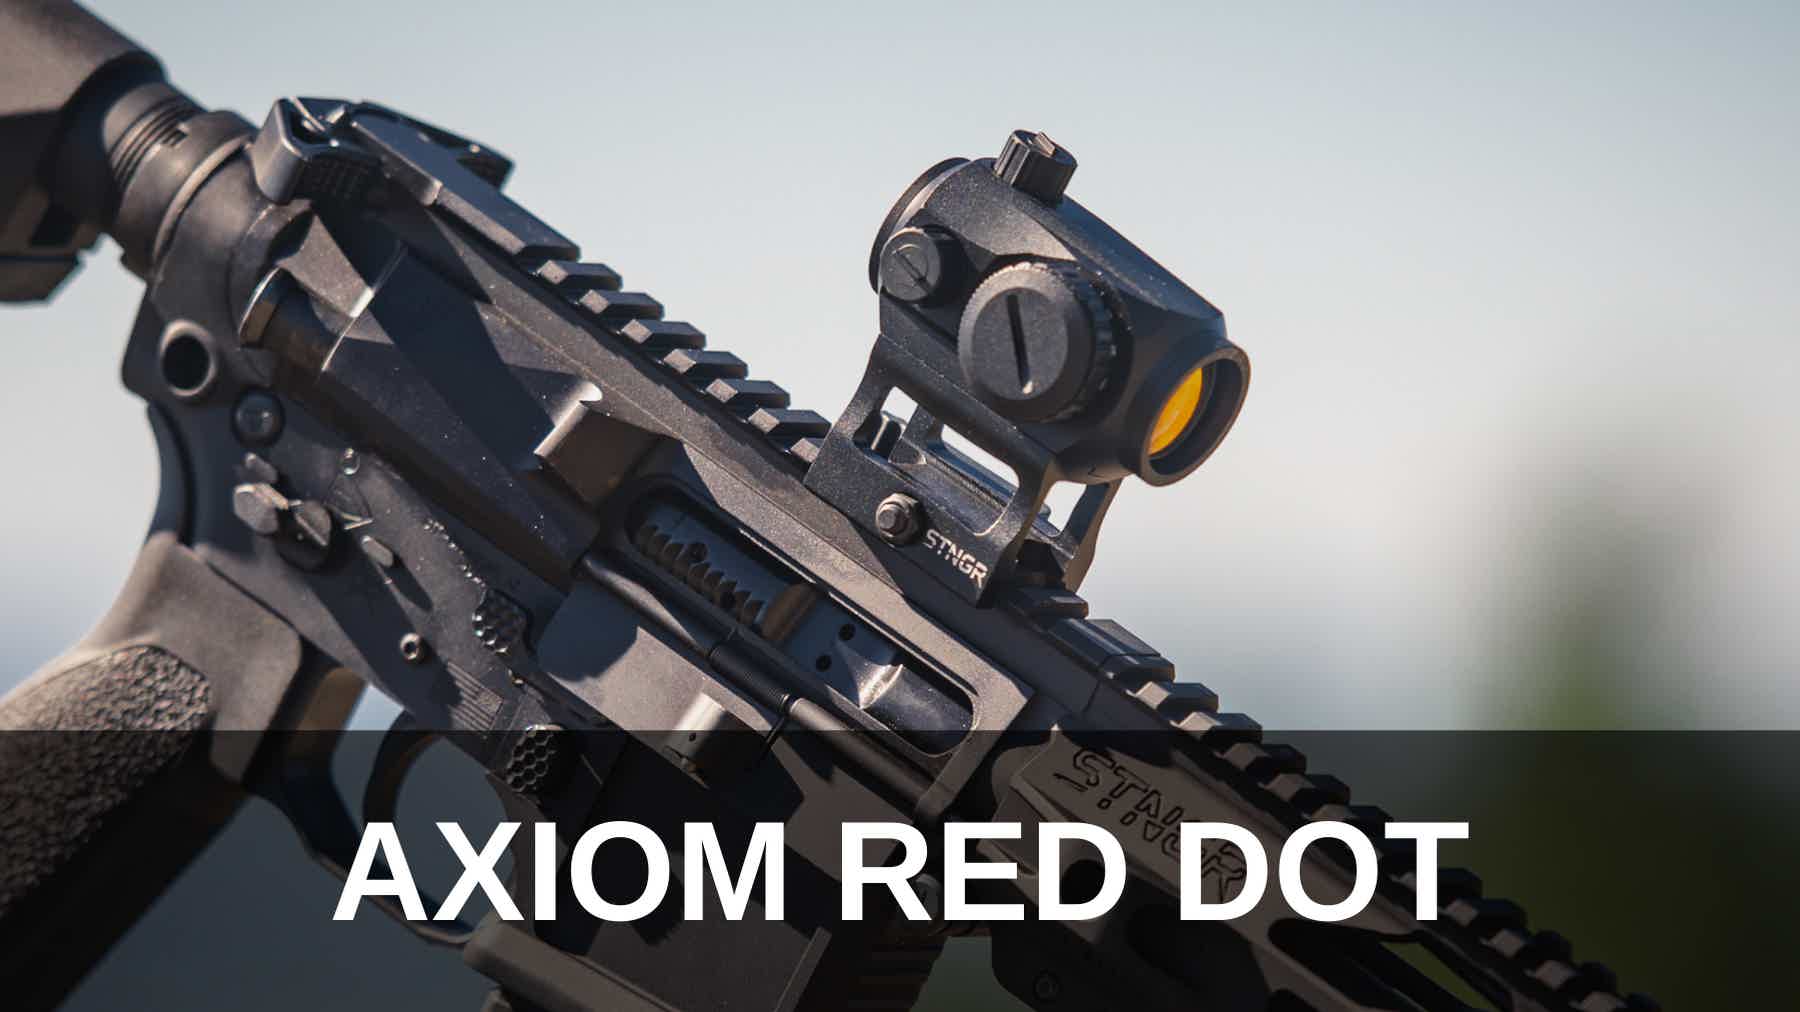 STNGR Axiom red dot sight on an AR-15